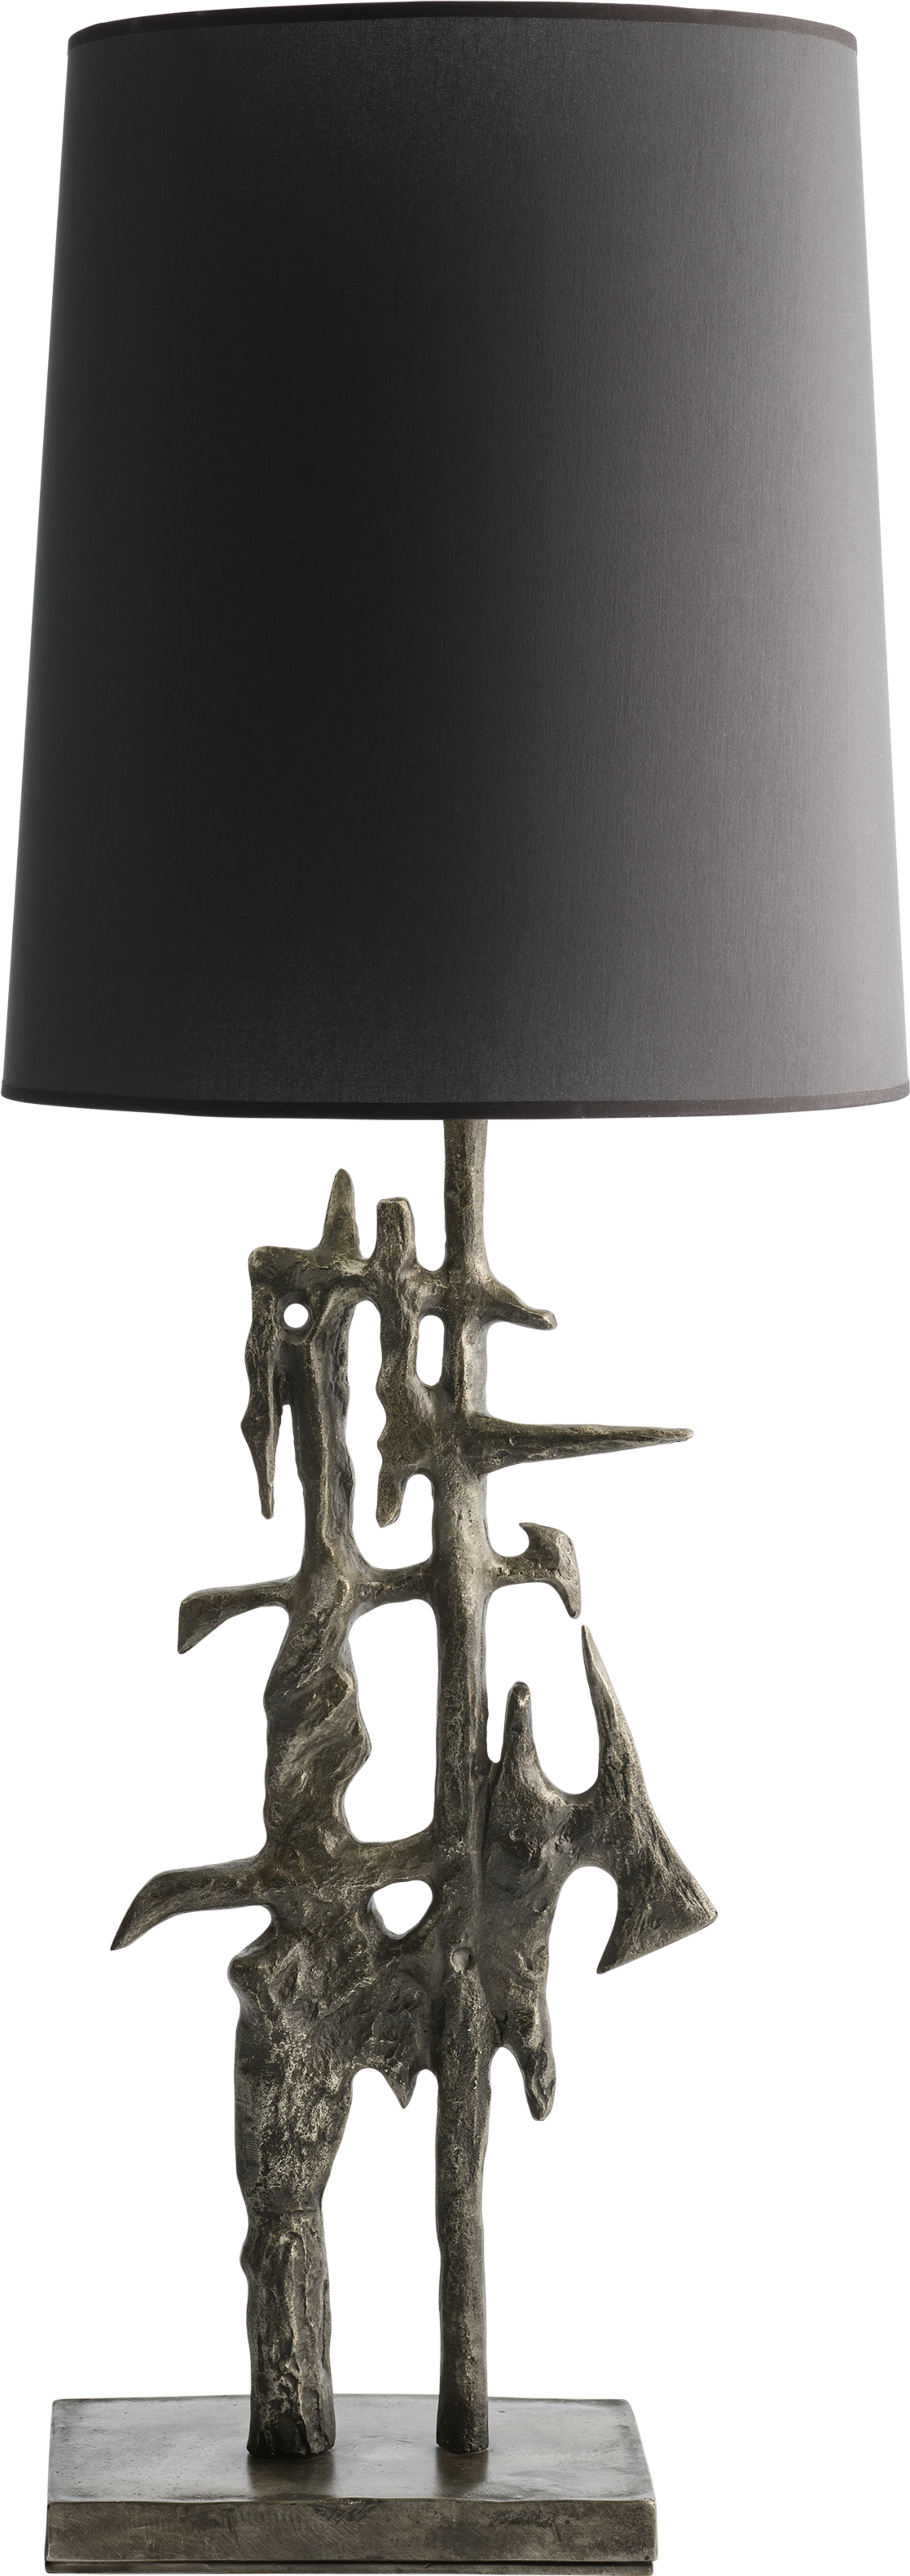 Carpathia table lamp